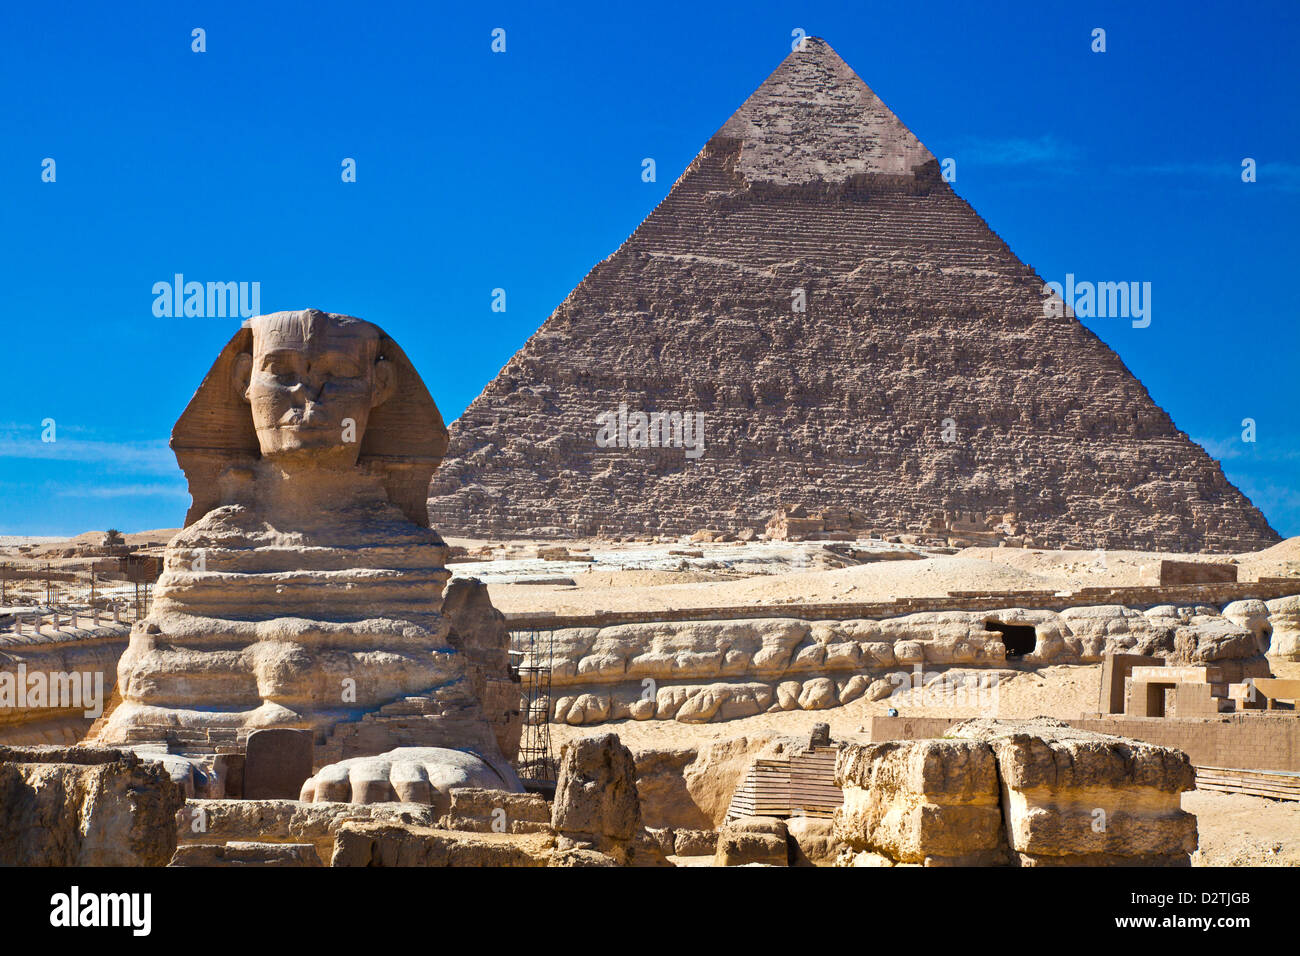 La pirámide de Khafre, también conocido como Chephren y la Esfinge, en la necrópolis de la meseta de Giza, cerca de El Cairo, Egipto Foto de stock